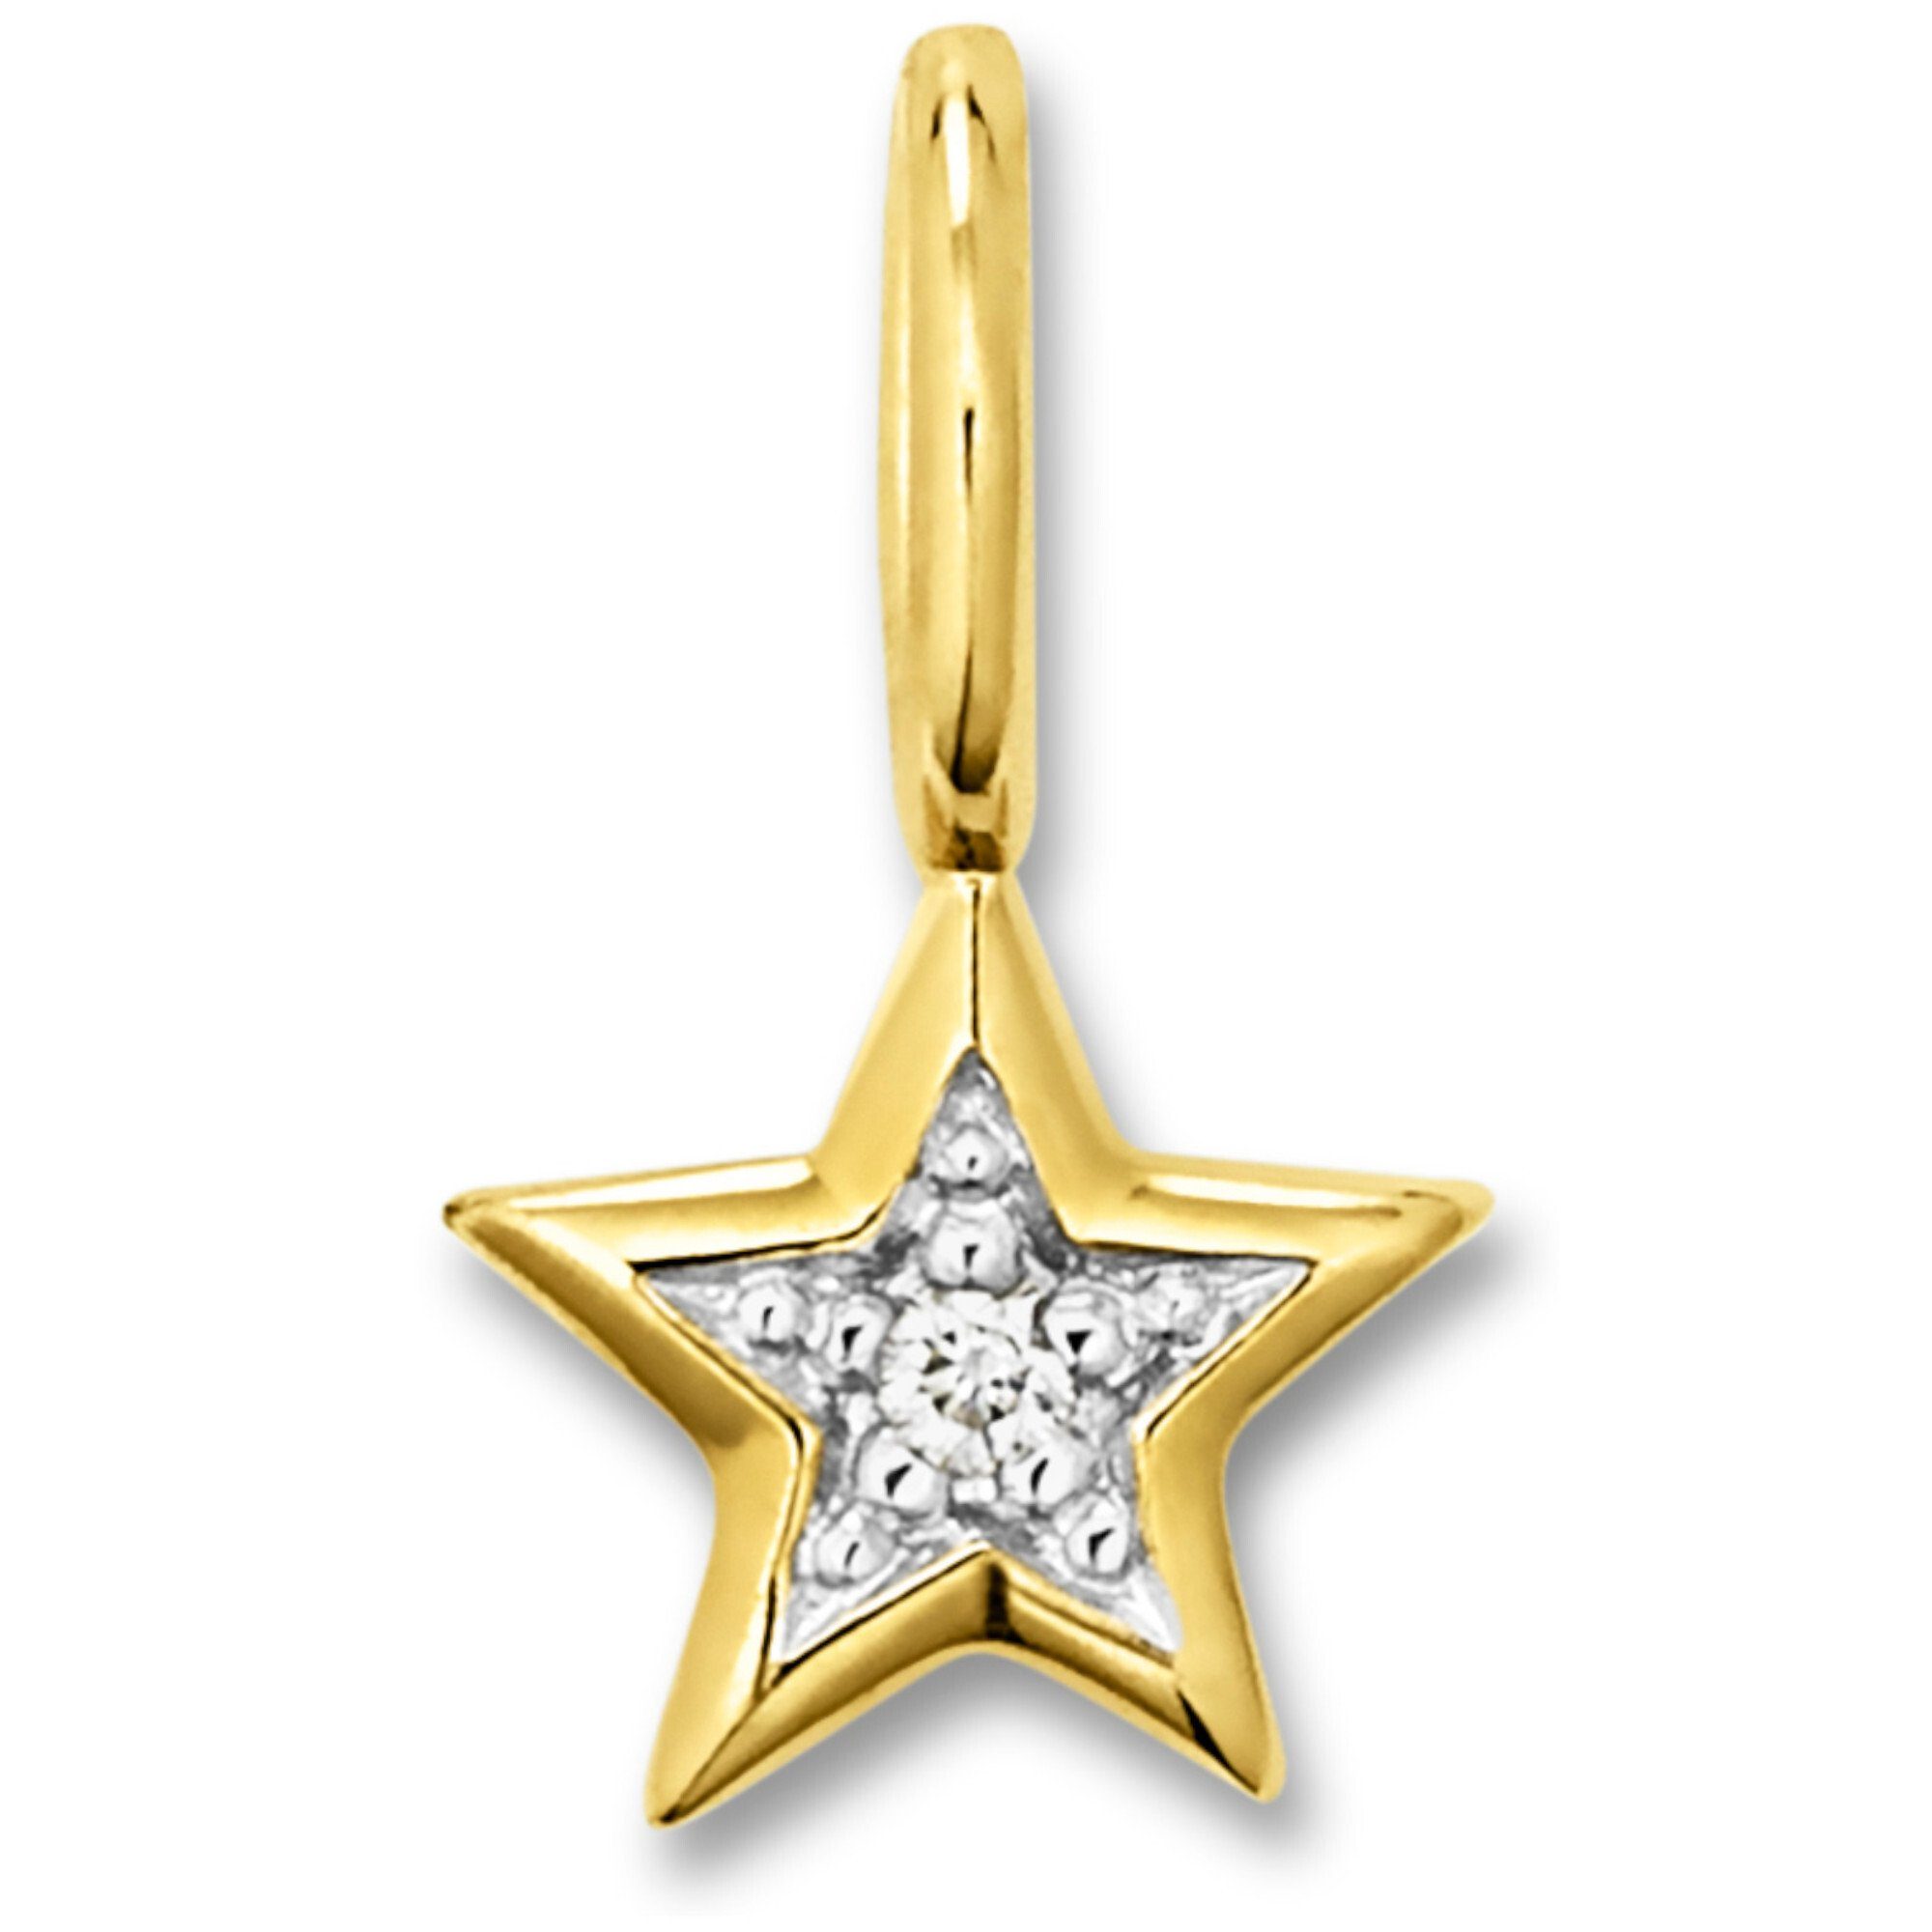 ONE ELEMENT Kettenanhänger 0.01 ct Diamant Brillant Stern Anhänger aus 333 Gelbgold, Damen Gold Schmuck Stern | Kettenanhänger